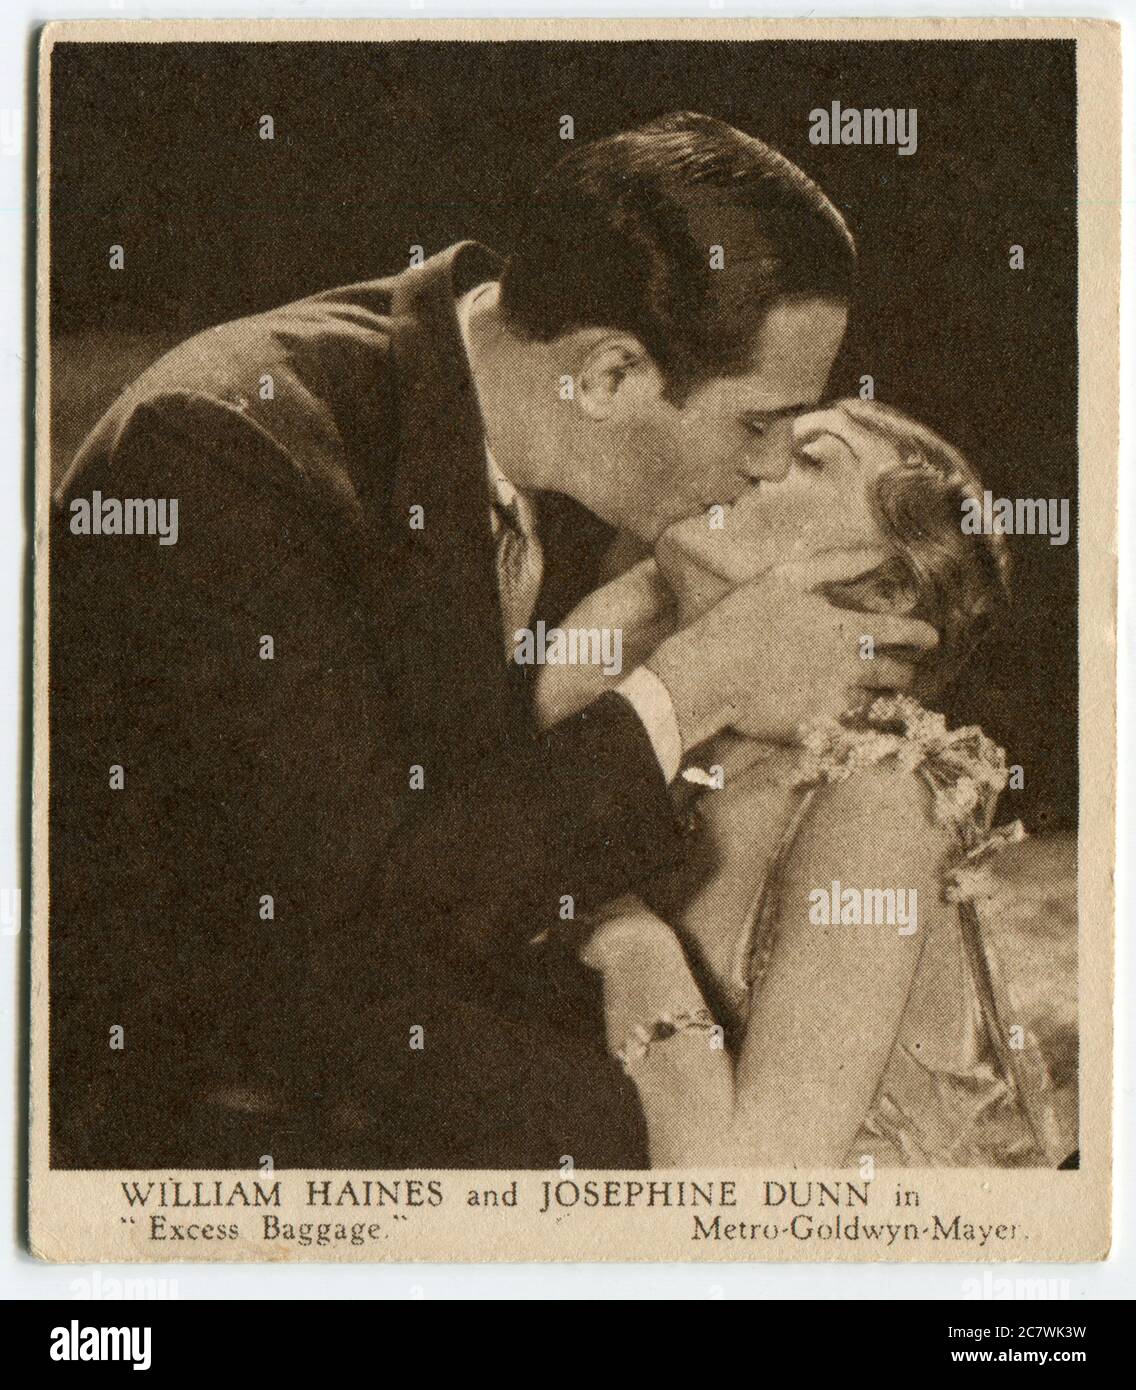 'Love Scenes from Famous Films' Kensitas tarjeta de cigarrillos - William Haynes y Josephine Dunn en 'exceso de equipaje'. Segunda serie publicada en 1932 por J. Wix & Sons Ltd Foto de stock